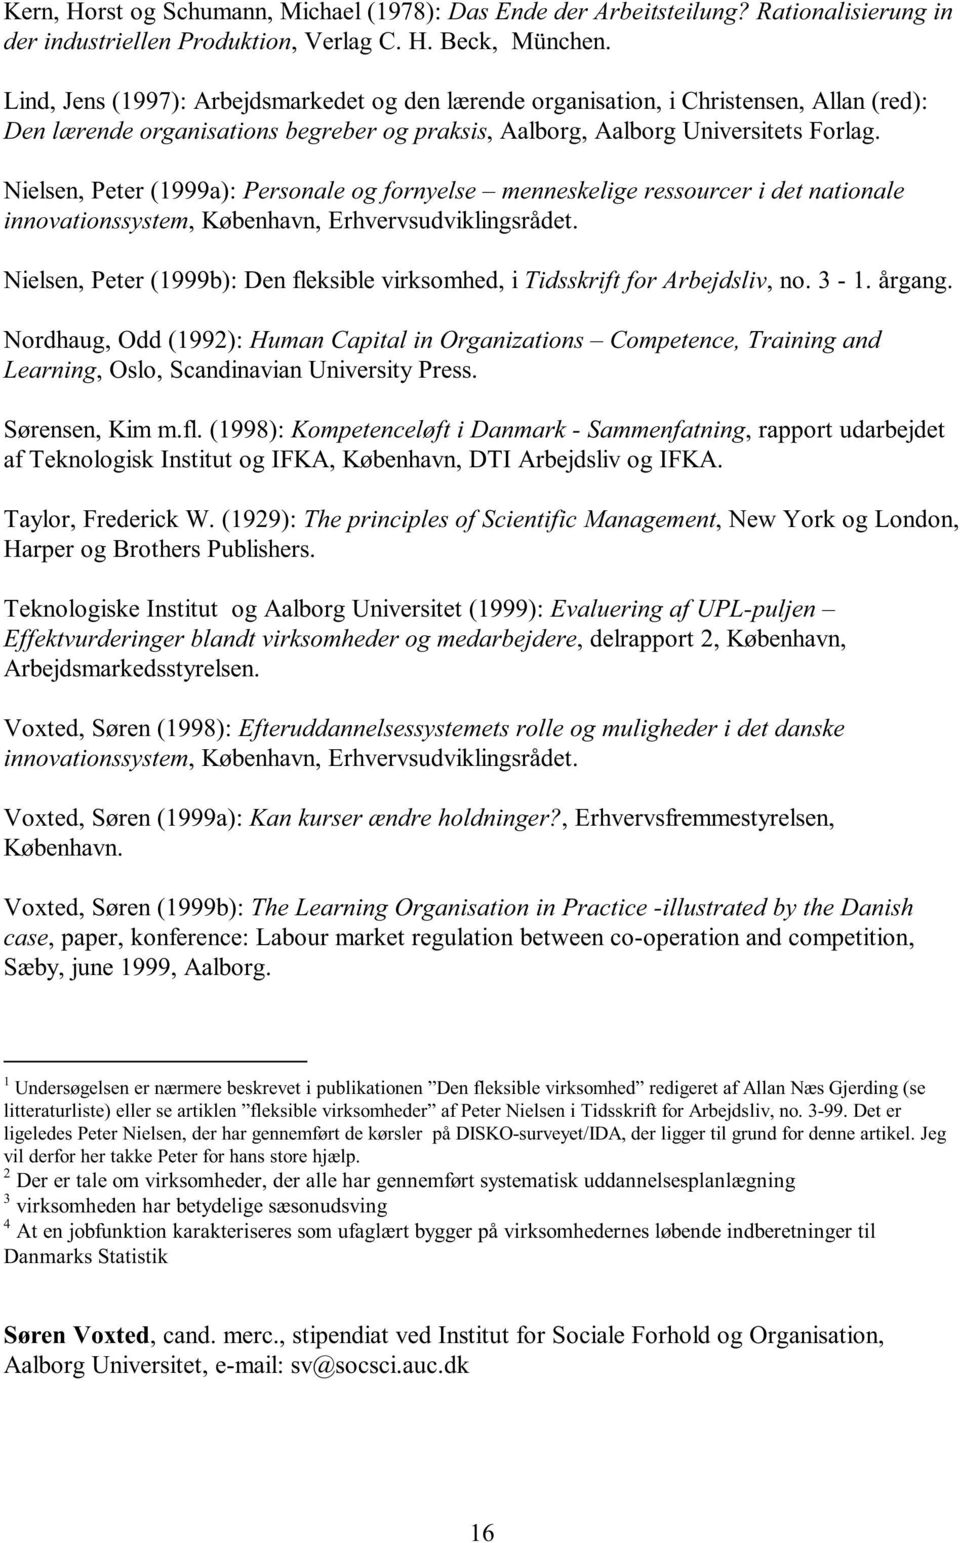 Nielsen, Peter (1999a): Personale og fornyelse menneskelige ressourcer i det nationale innovationssystem, København, Erhvervsudviklingsrådet.